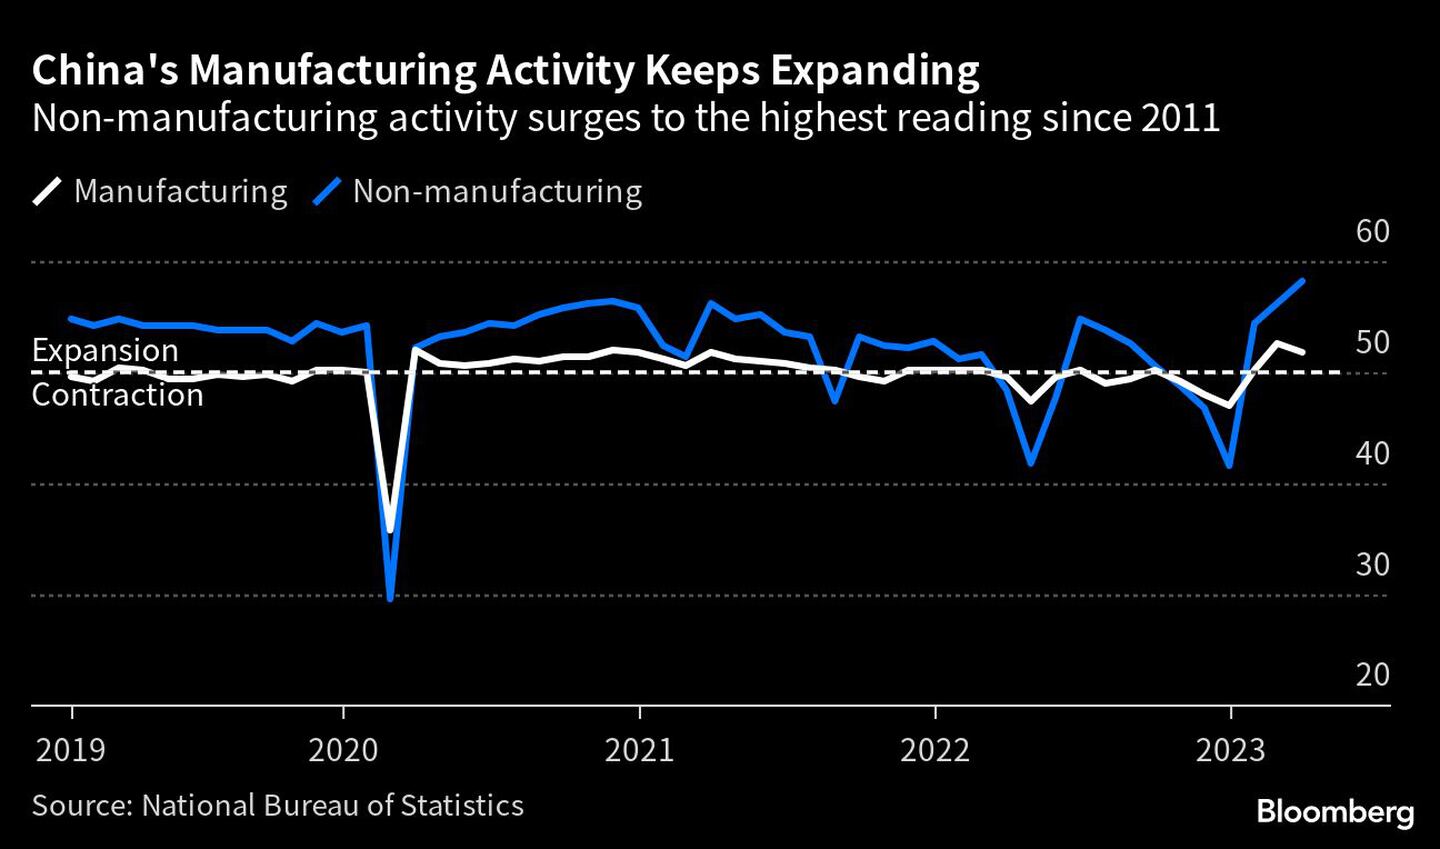 La actividad manufacturera china sigue creciendo | La actividad no manufacturera alcanza su nivel más alto desde 2011dfd